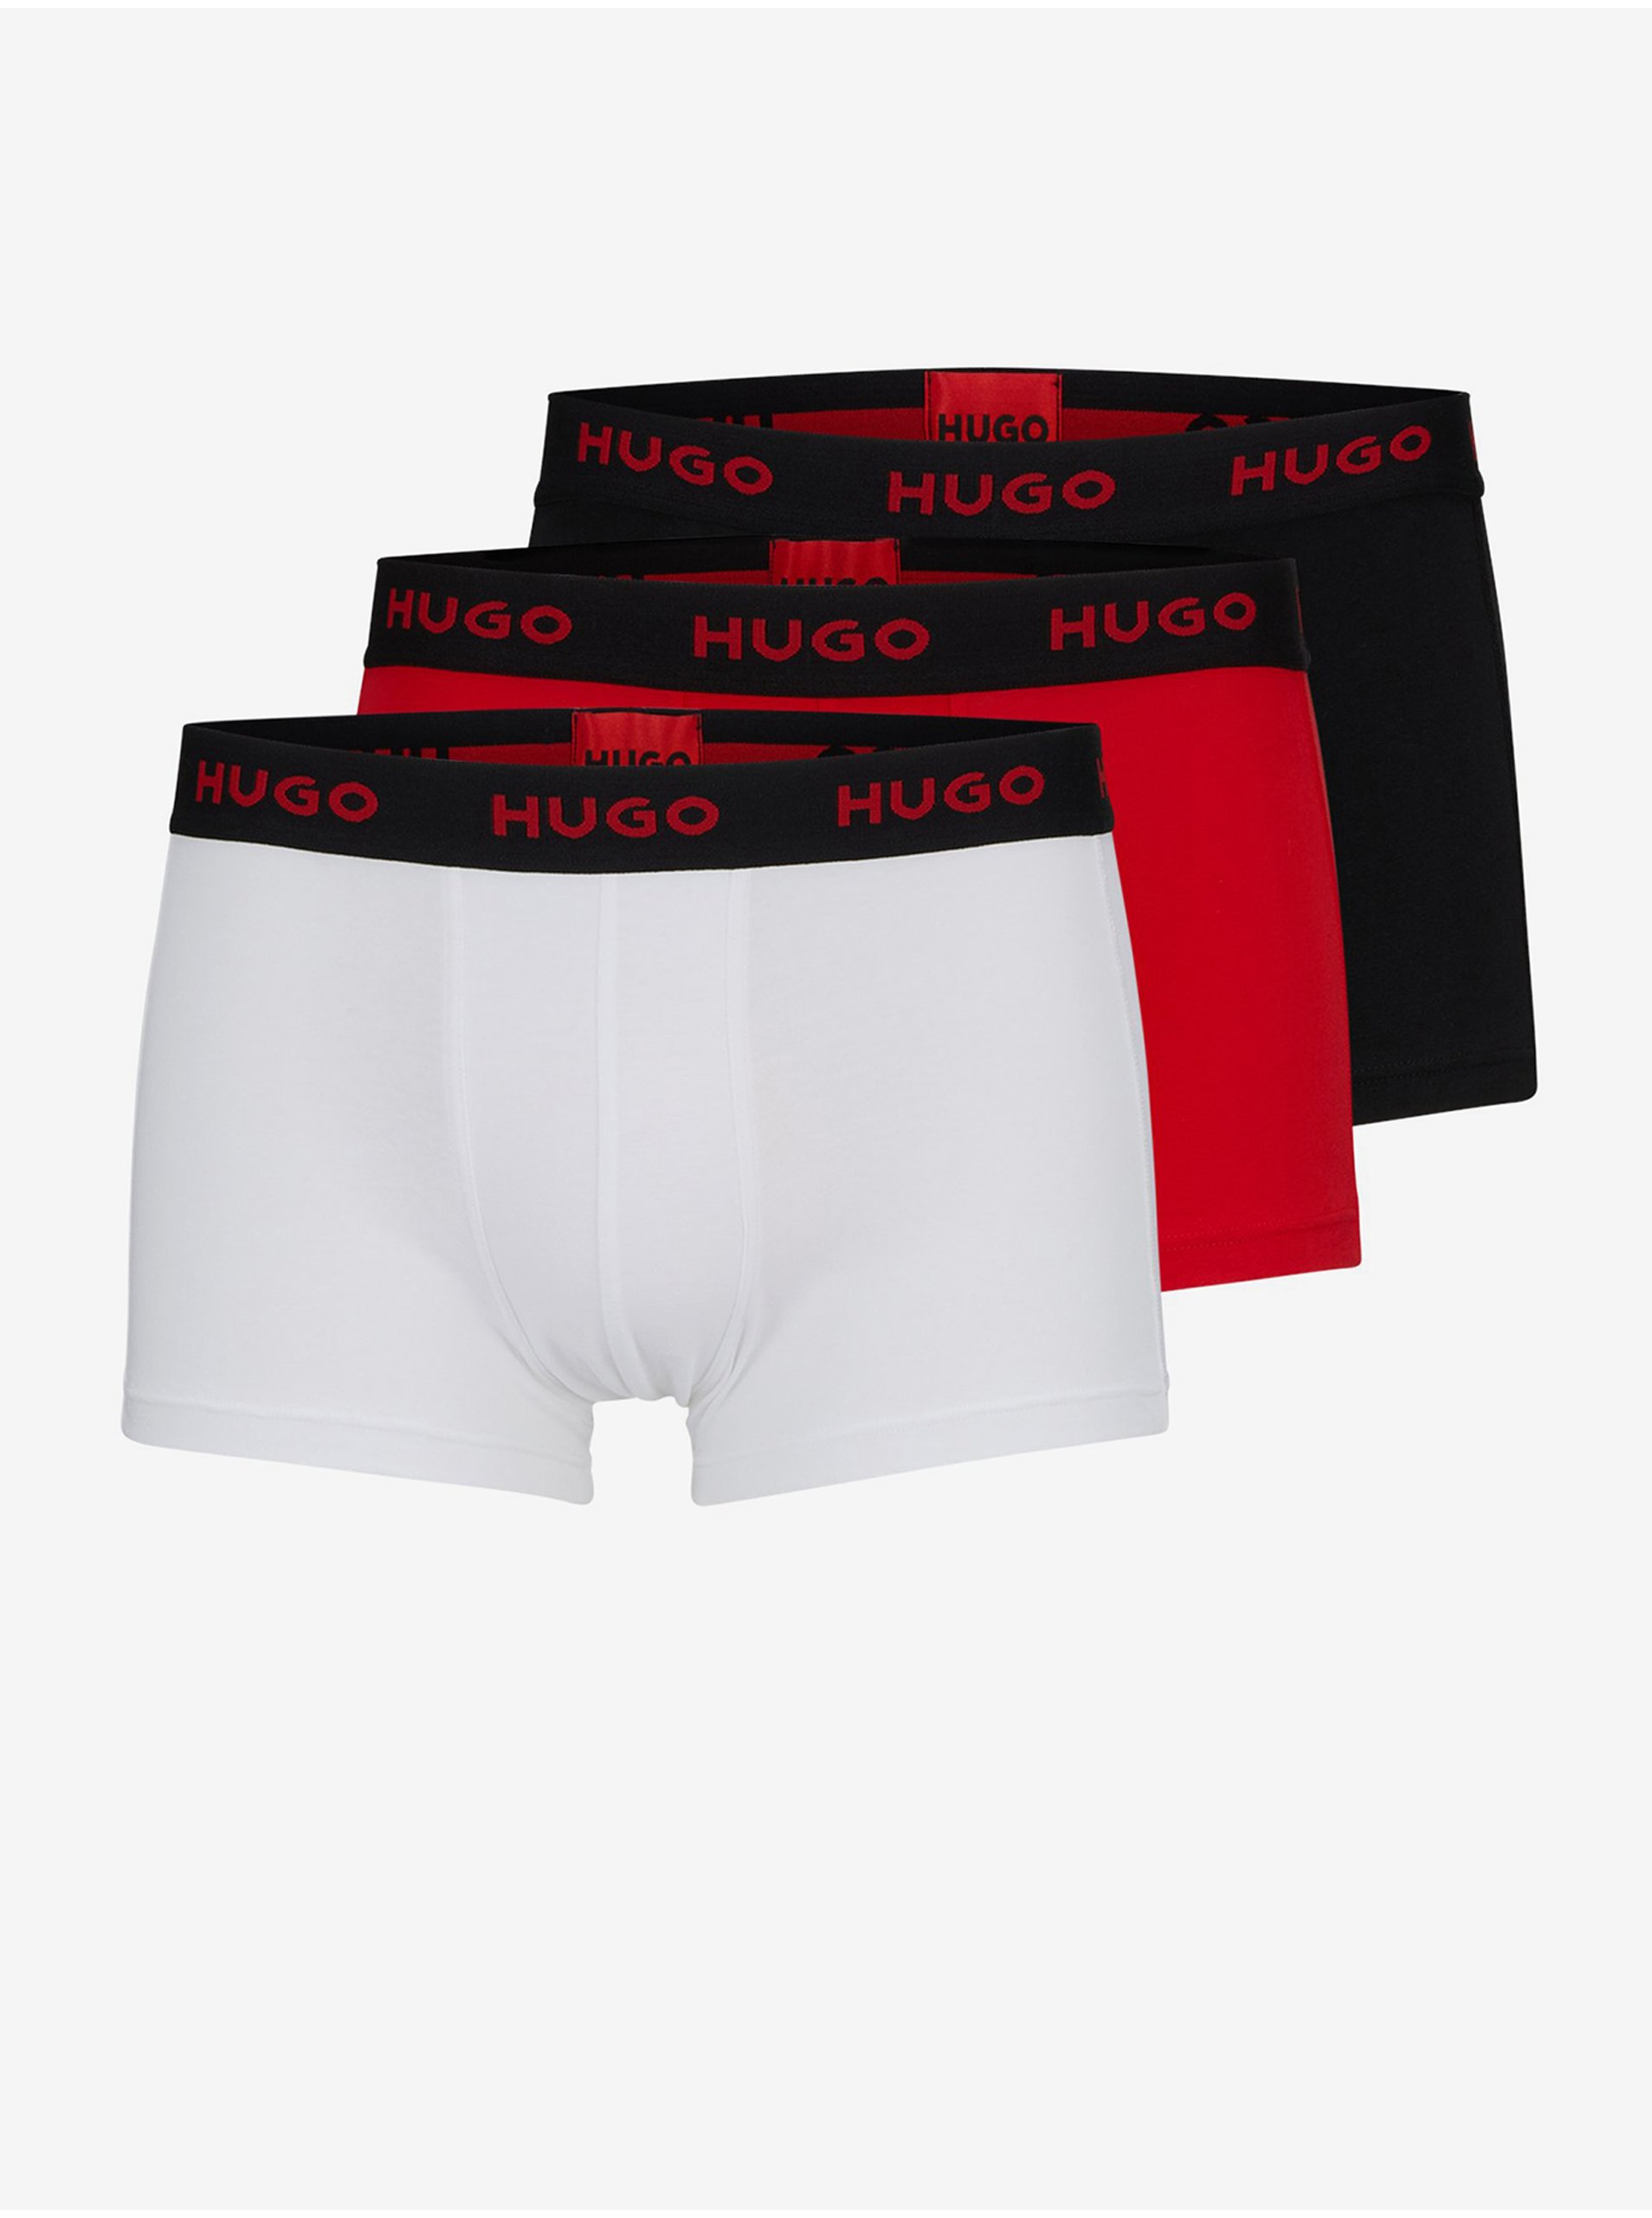 Levně Sada tří pánských boxerek v červené, černé a bílé barvě HUGO